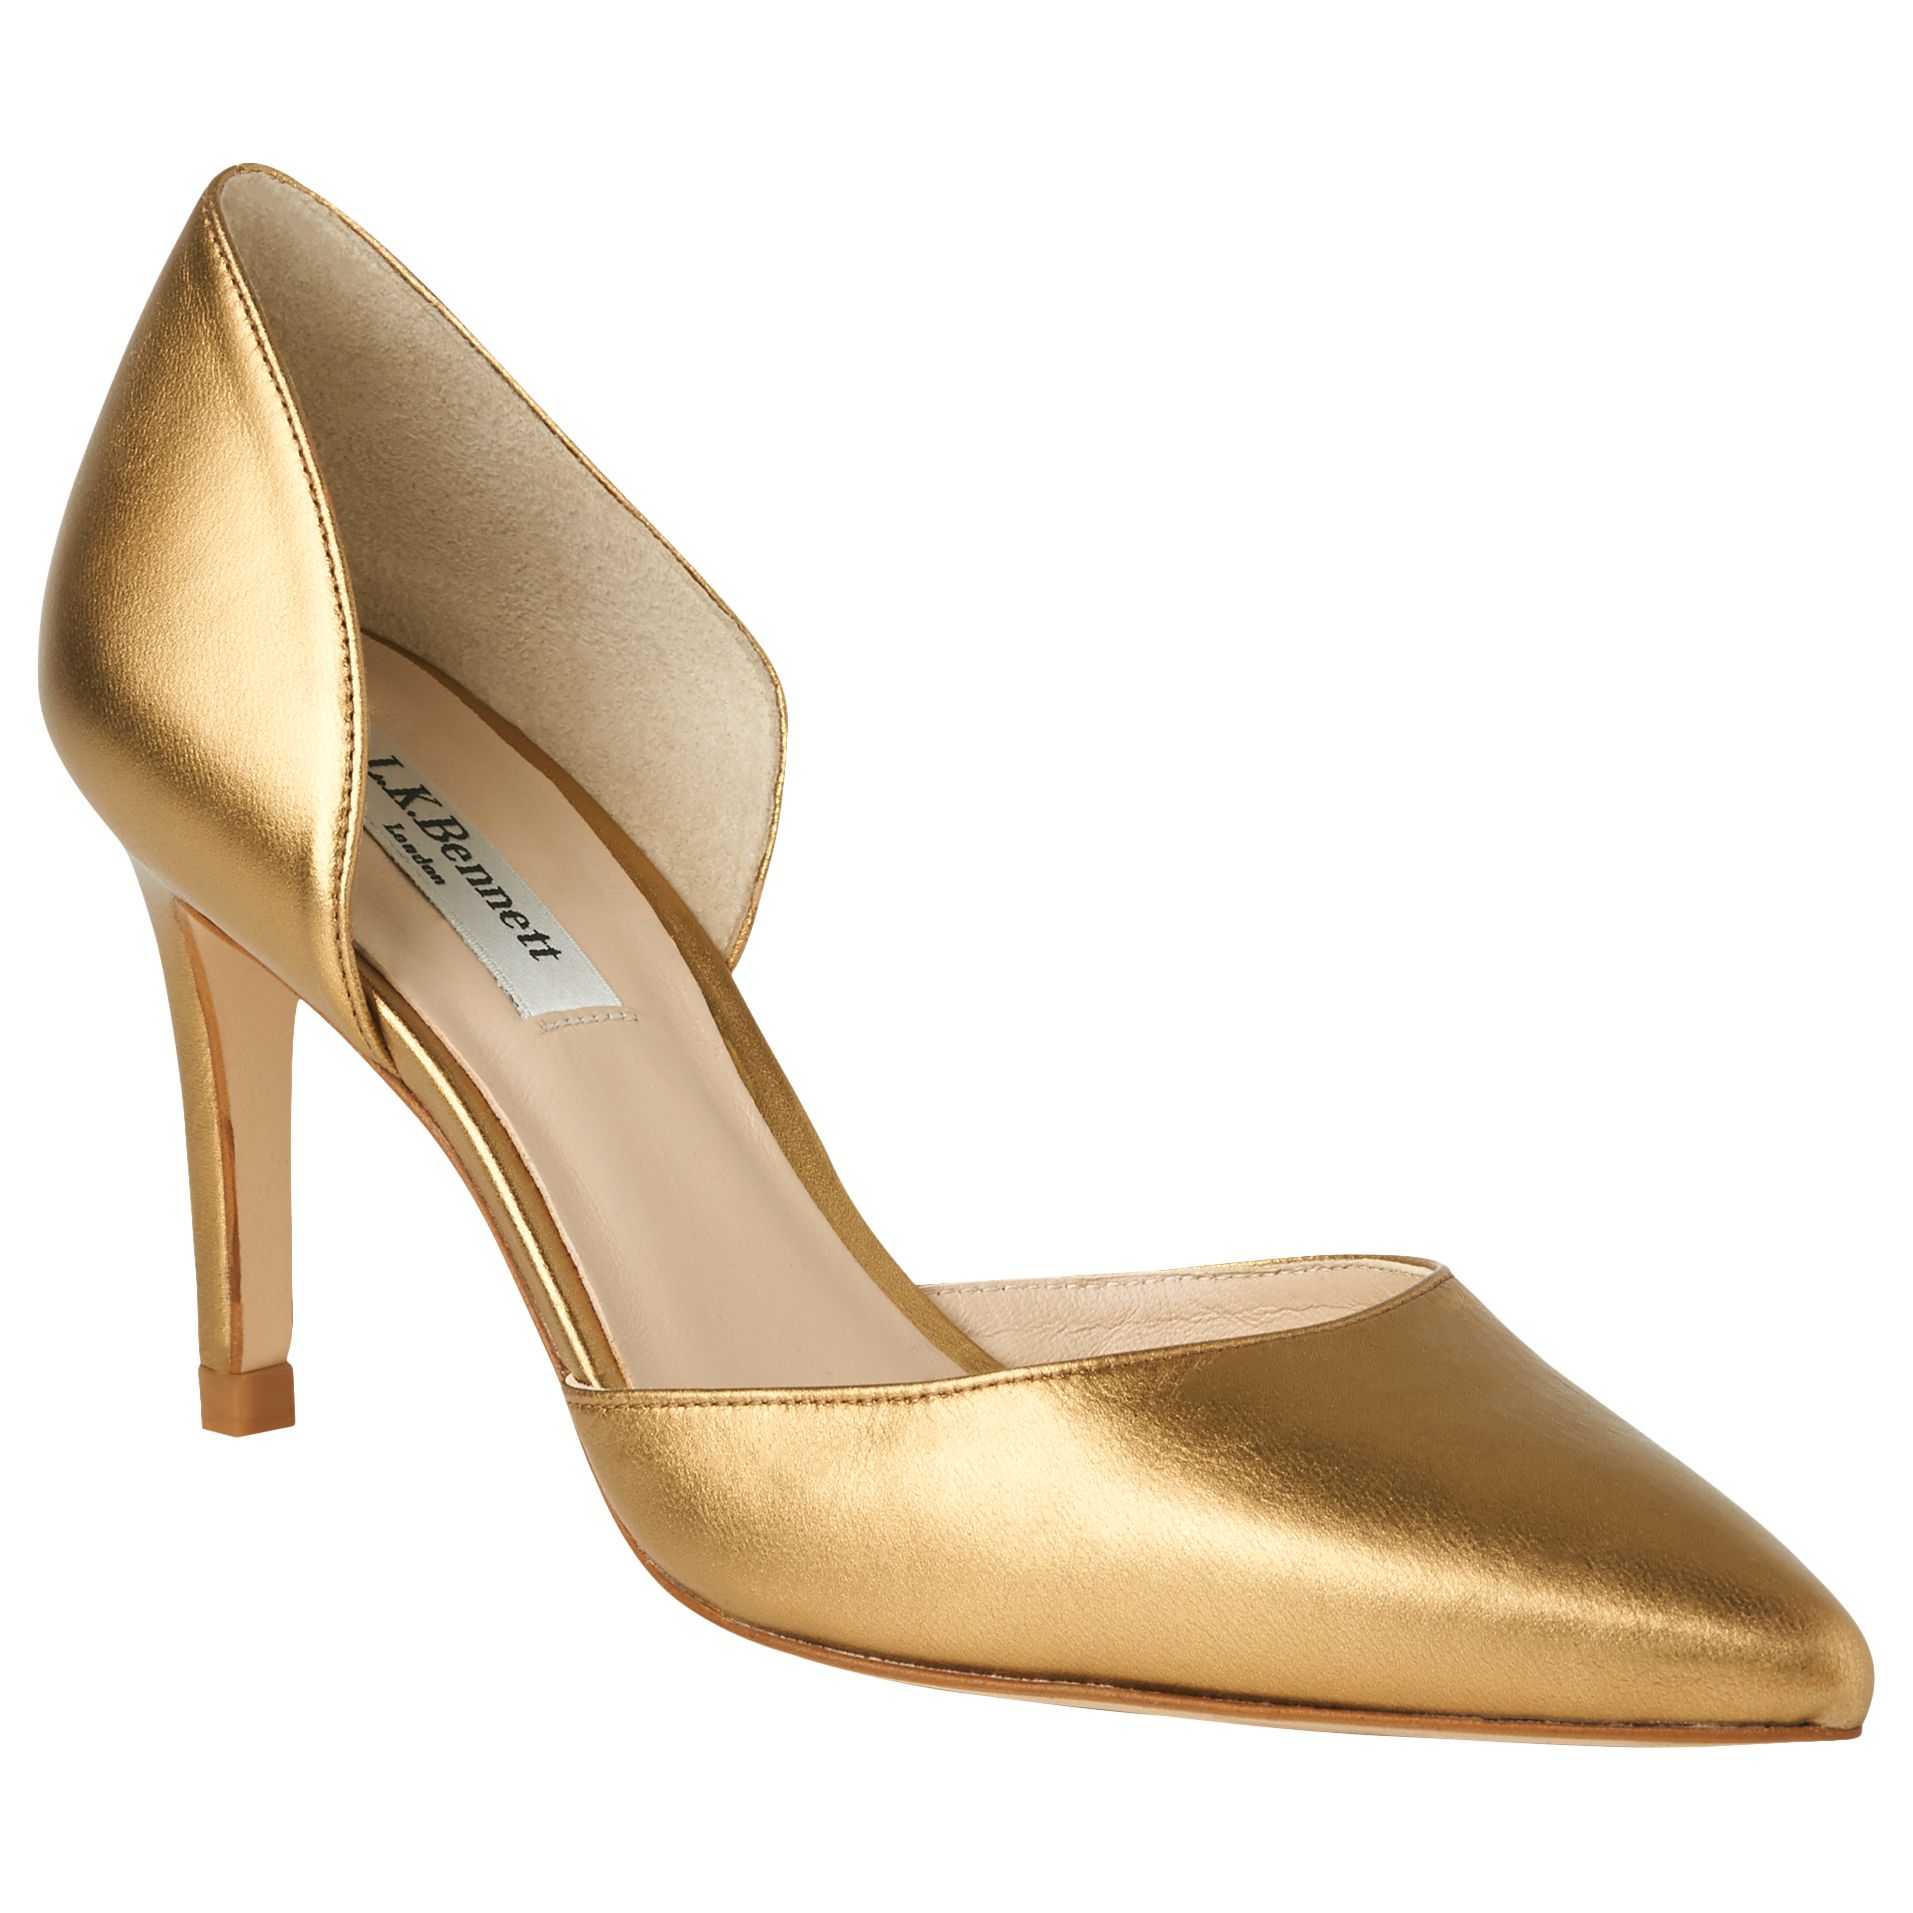 L.K. Bennett Flossie Stiletto Heeled Court Shoes, Bronze, 5